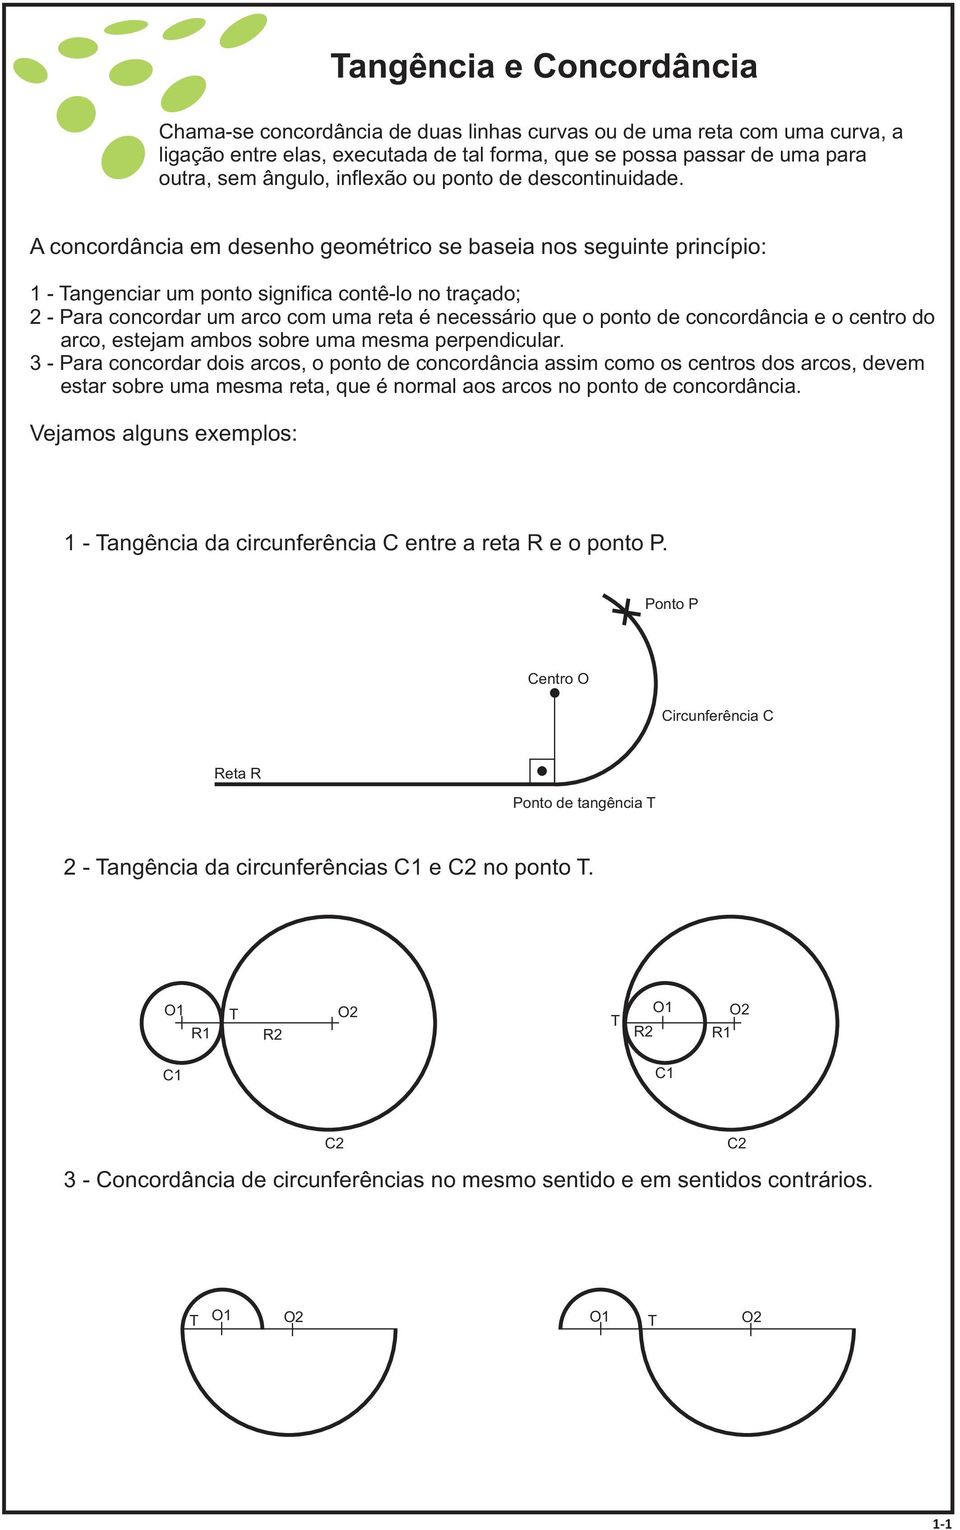 A concordância em desenho geométrico se baseia nos seguinte princípio: 1 - Tangenciar um ponto significa contê-lo no traçado; 2 - Para concordar um arco com uma reta é necessário que o ponto de